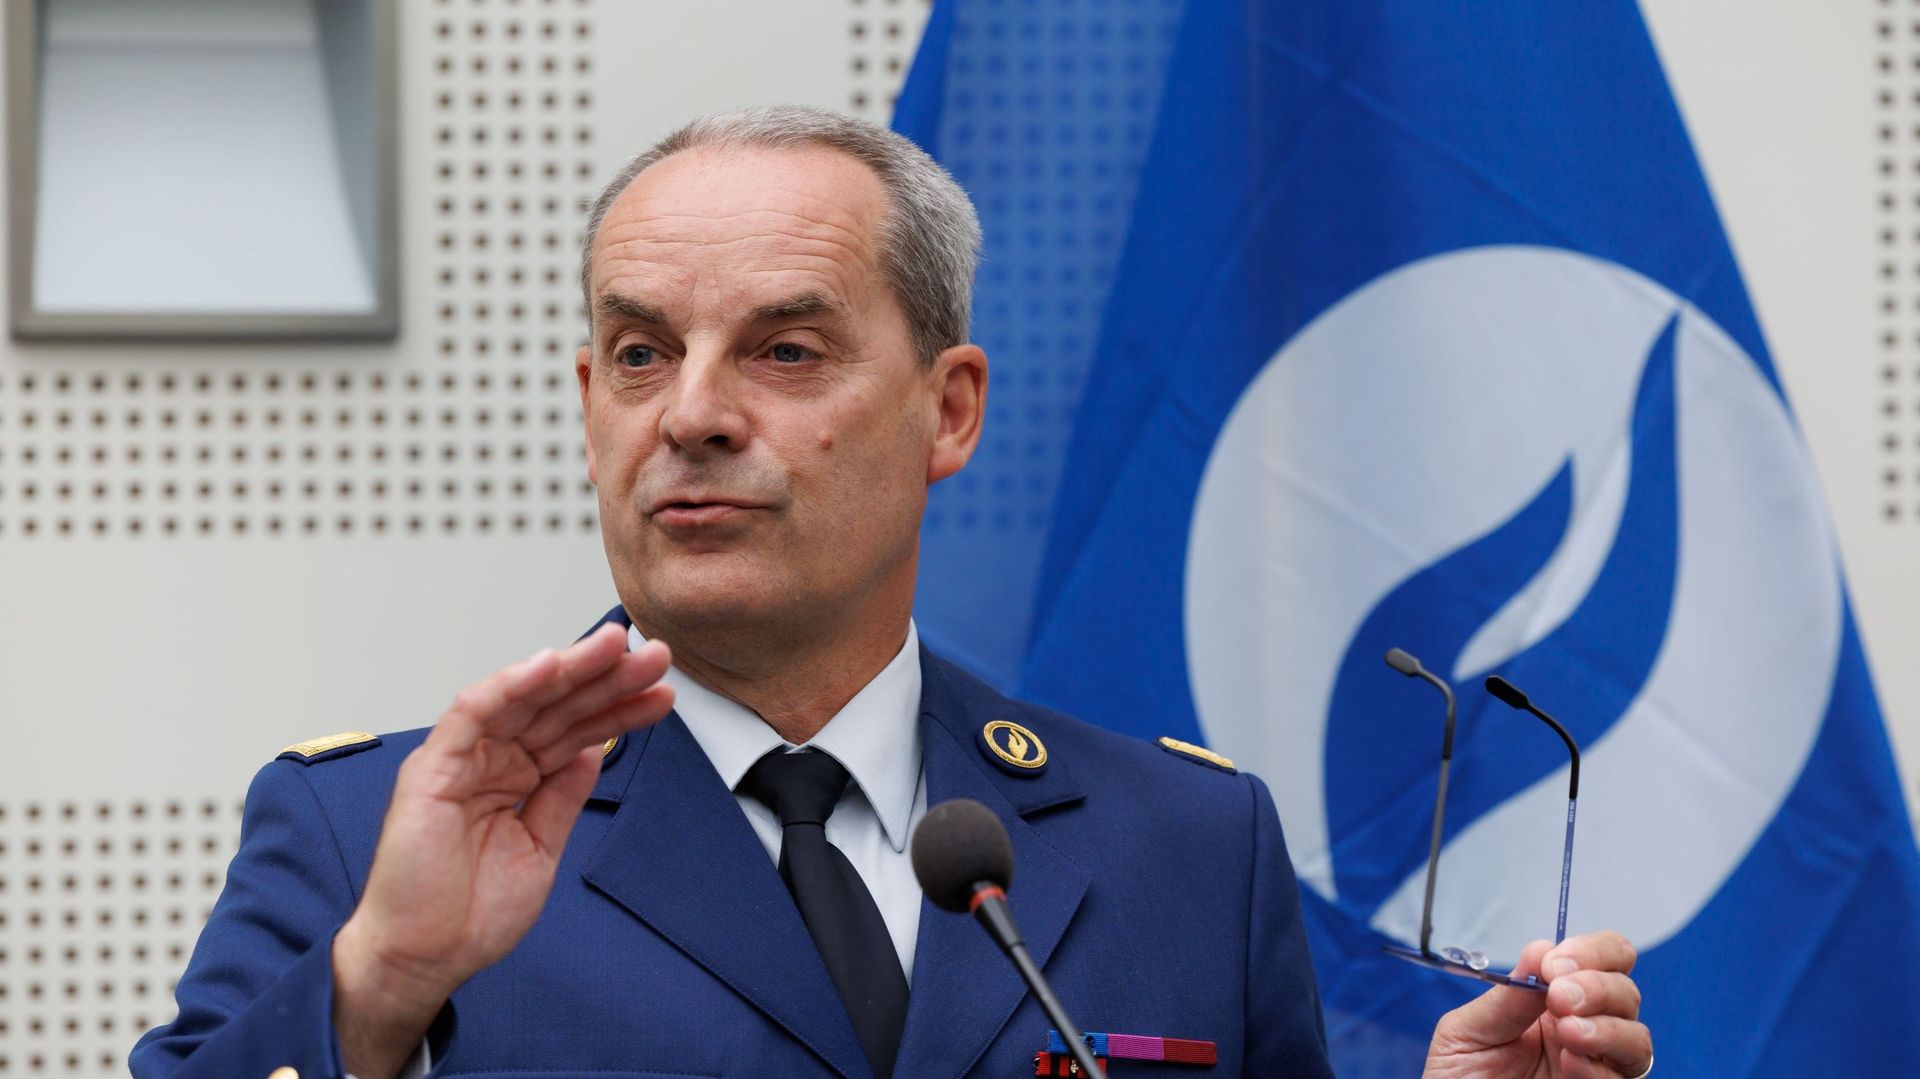 Le commissaire général de la police fédérale, Marc De Mesmaeker, poussé vers la sortie par le gouvernement ?